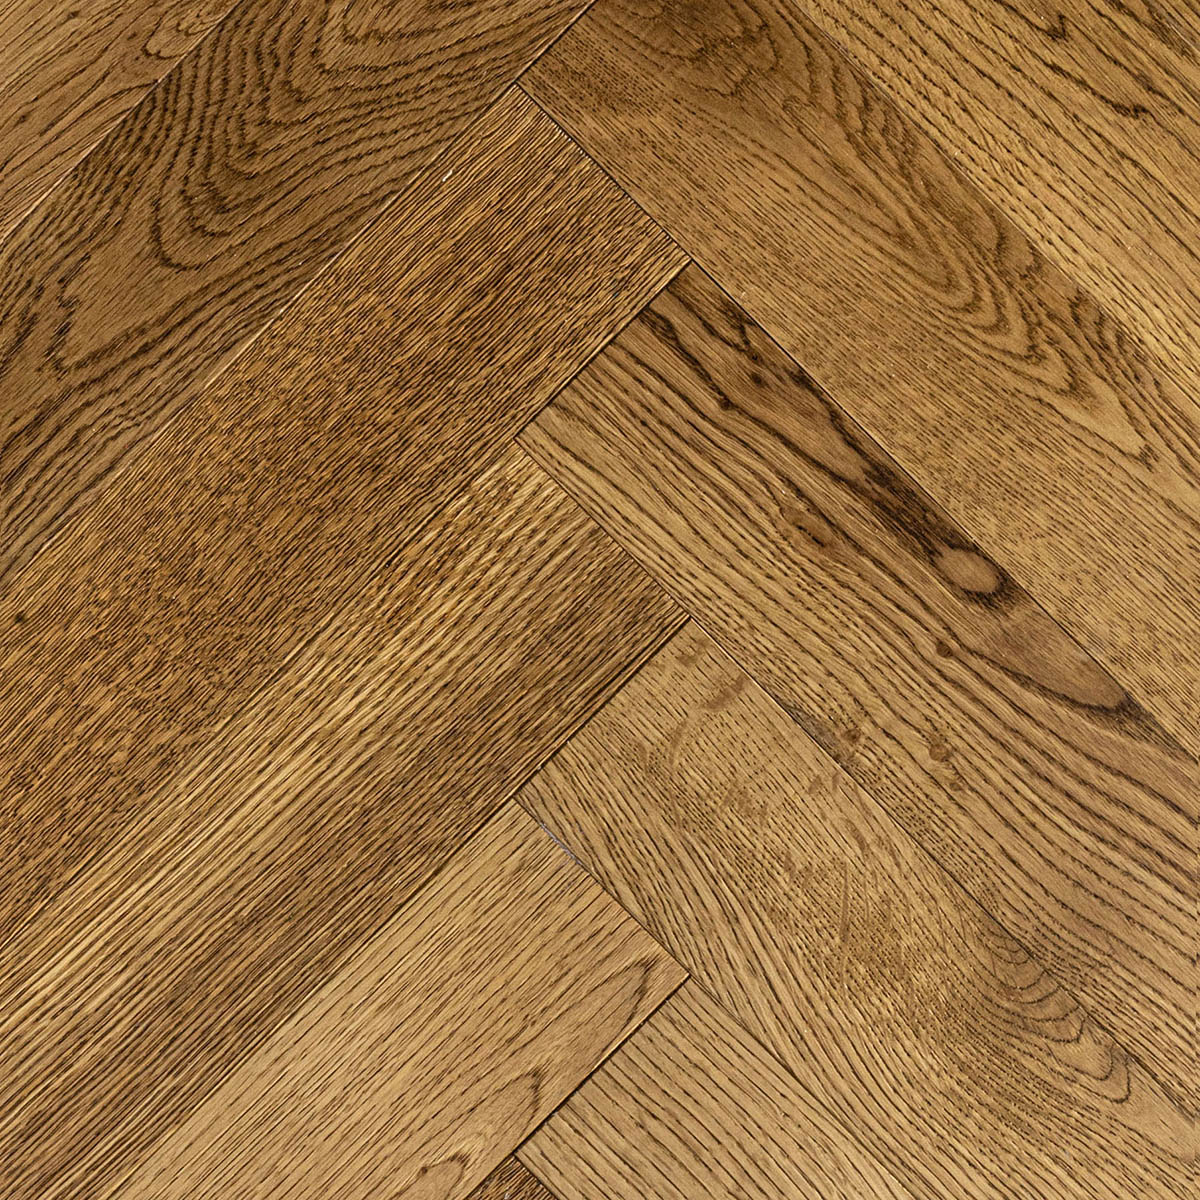 Bourne Road - Rustic Grade Medium Oak Herringbone Floor